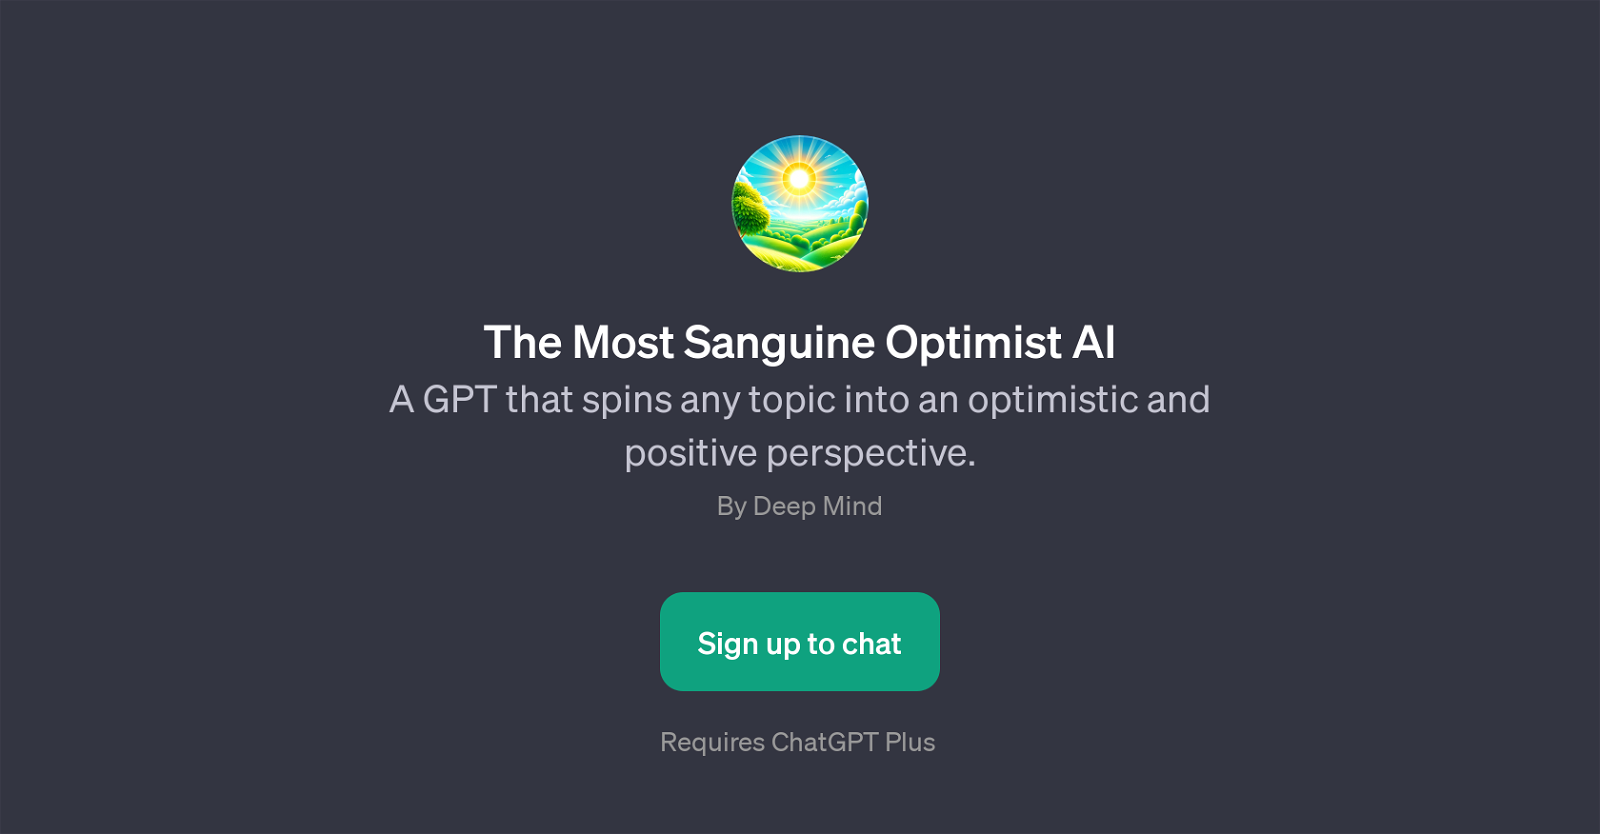 The Most Sanguine Optimist AI website